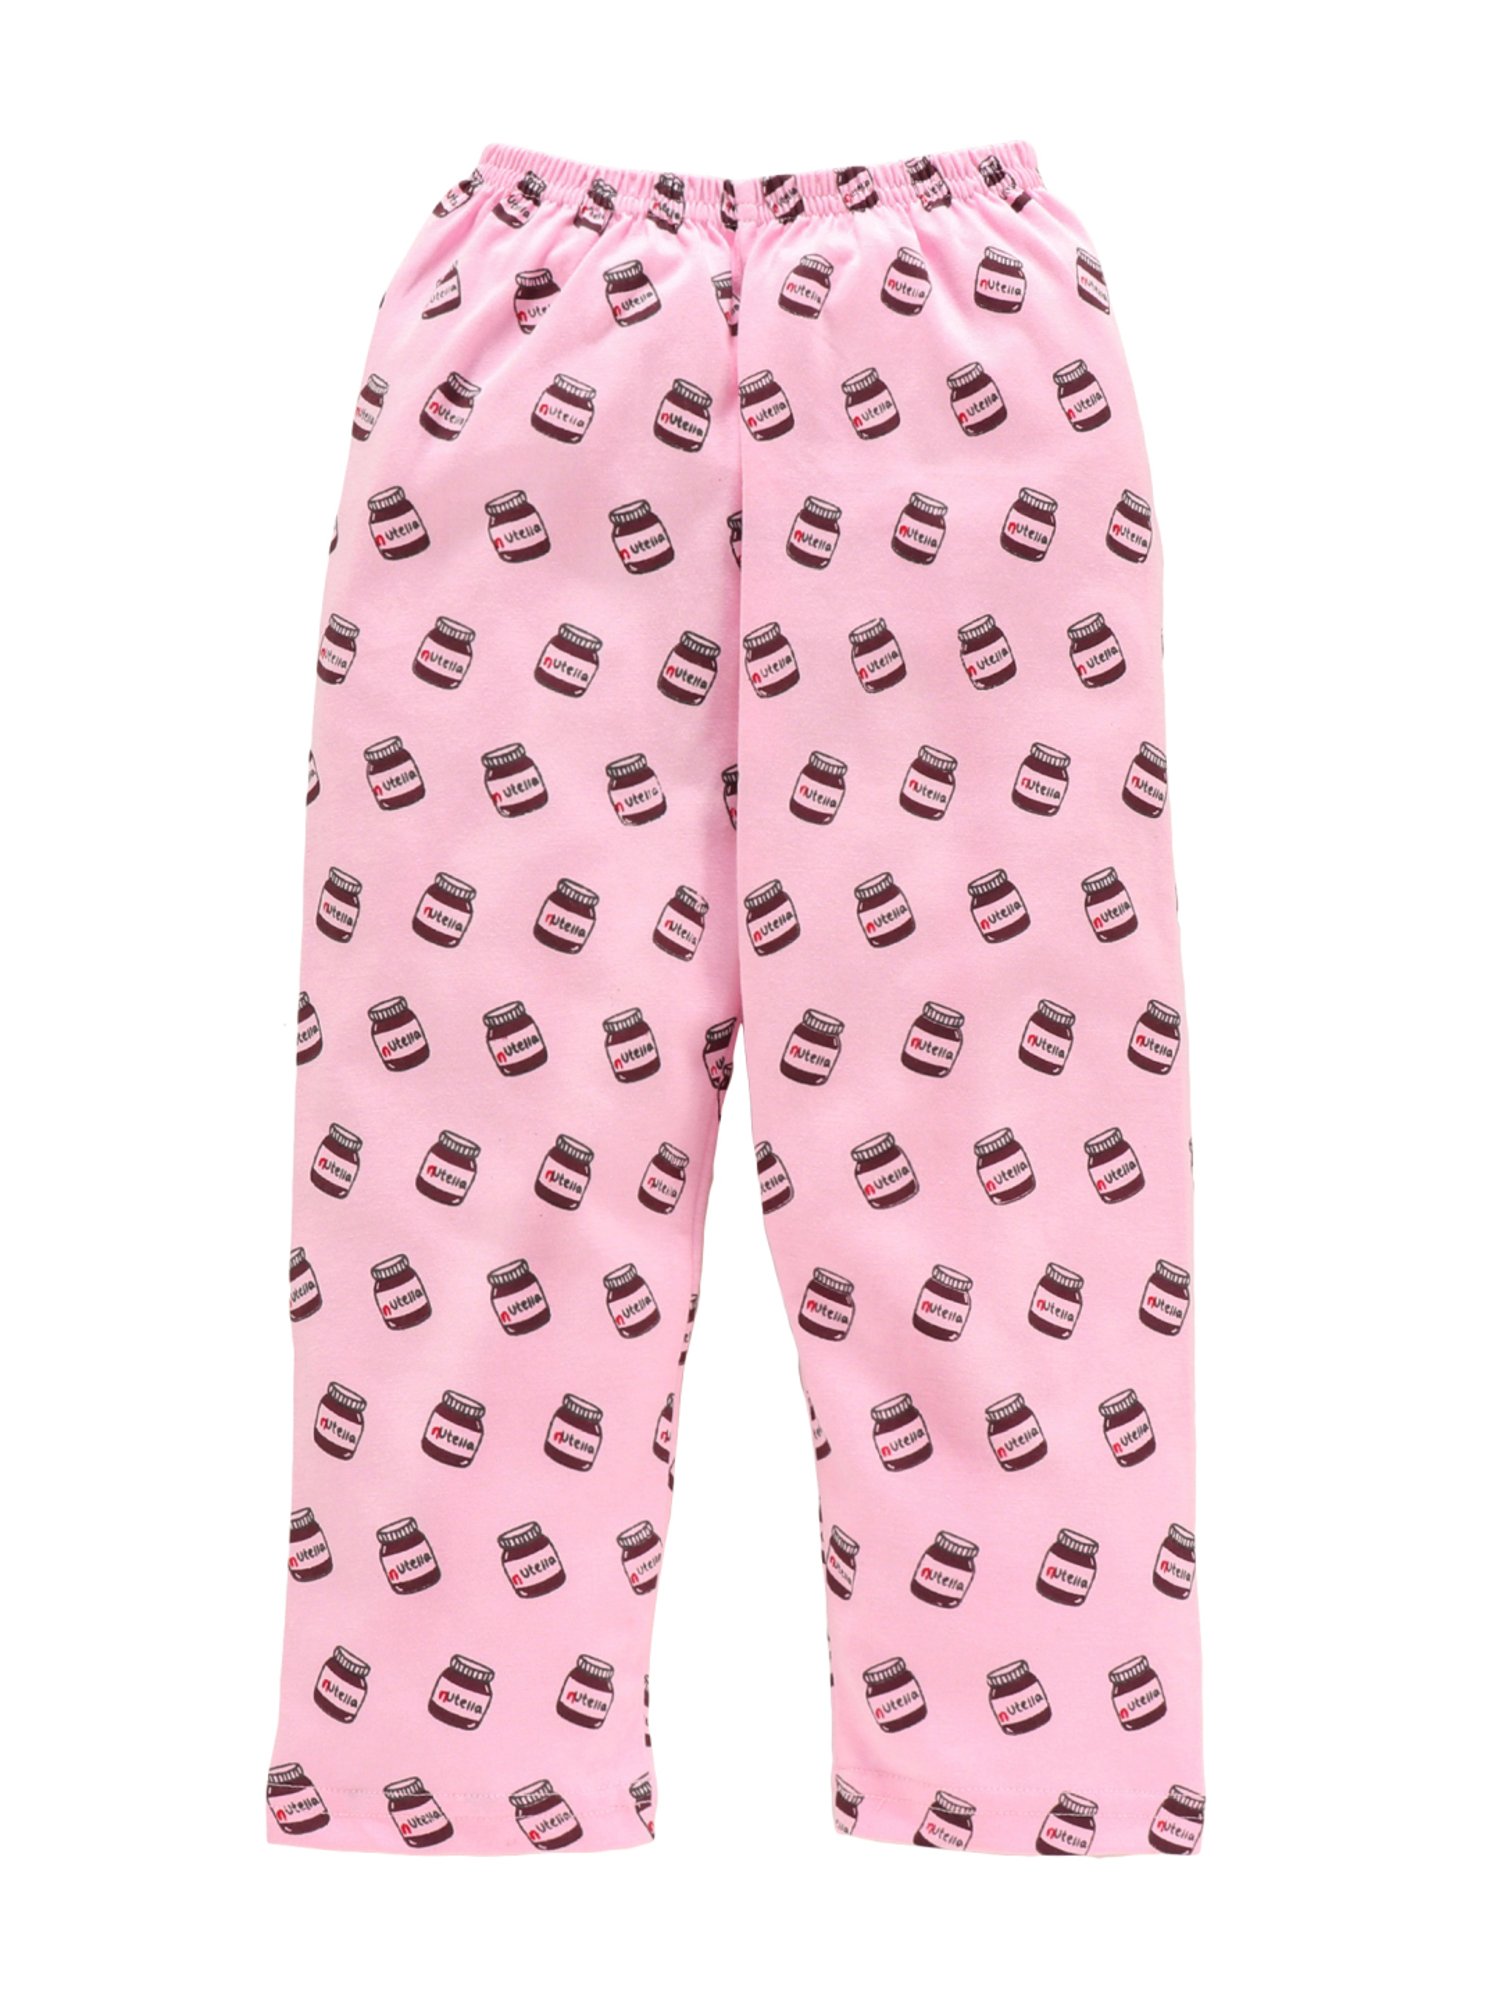 Buy Nite Flite Pink Avocado Pyjamas Online at desertcartSeychelles